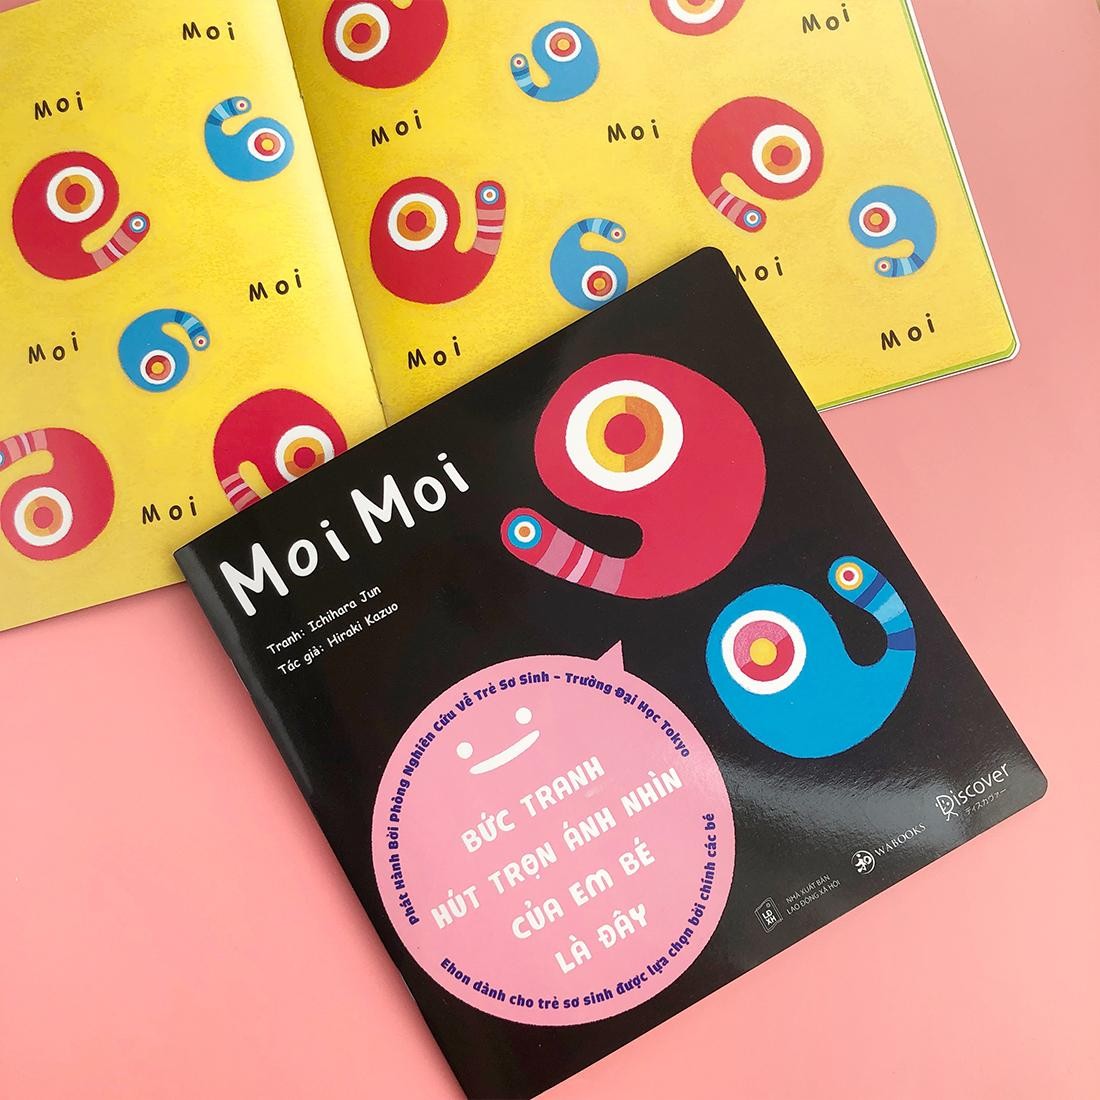 Sách Ehon Nhật Bản- Cuốn sách Ehon Moi Moi giúp các em bé ngừng khóc dành cho các bé sơ sinh- Ehon Moi Moi Bức Tranh Hút Trọn Mọi Ánh Nhìn